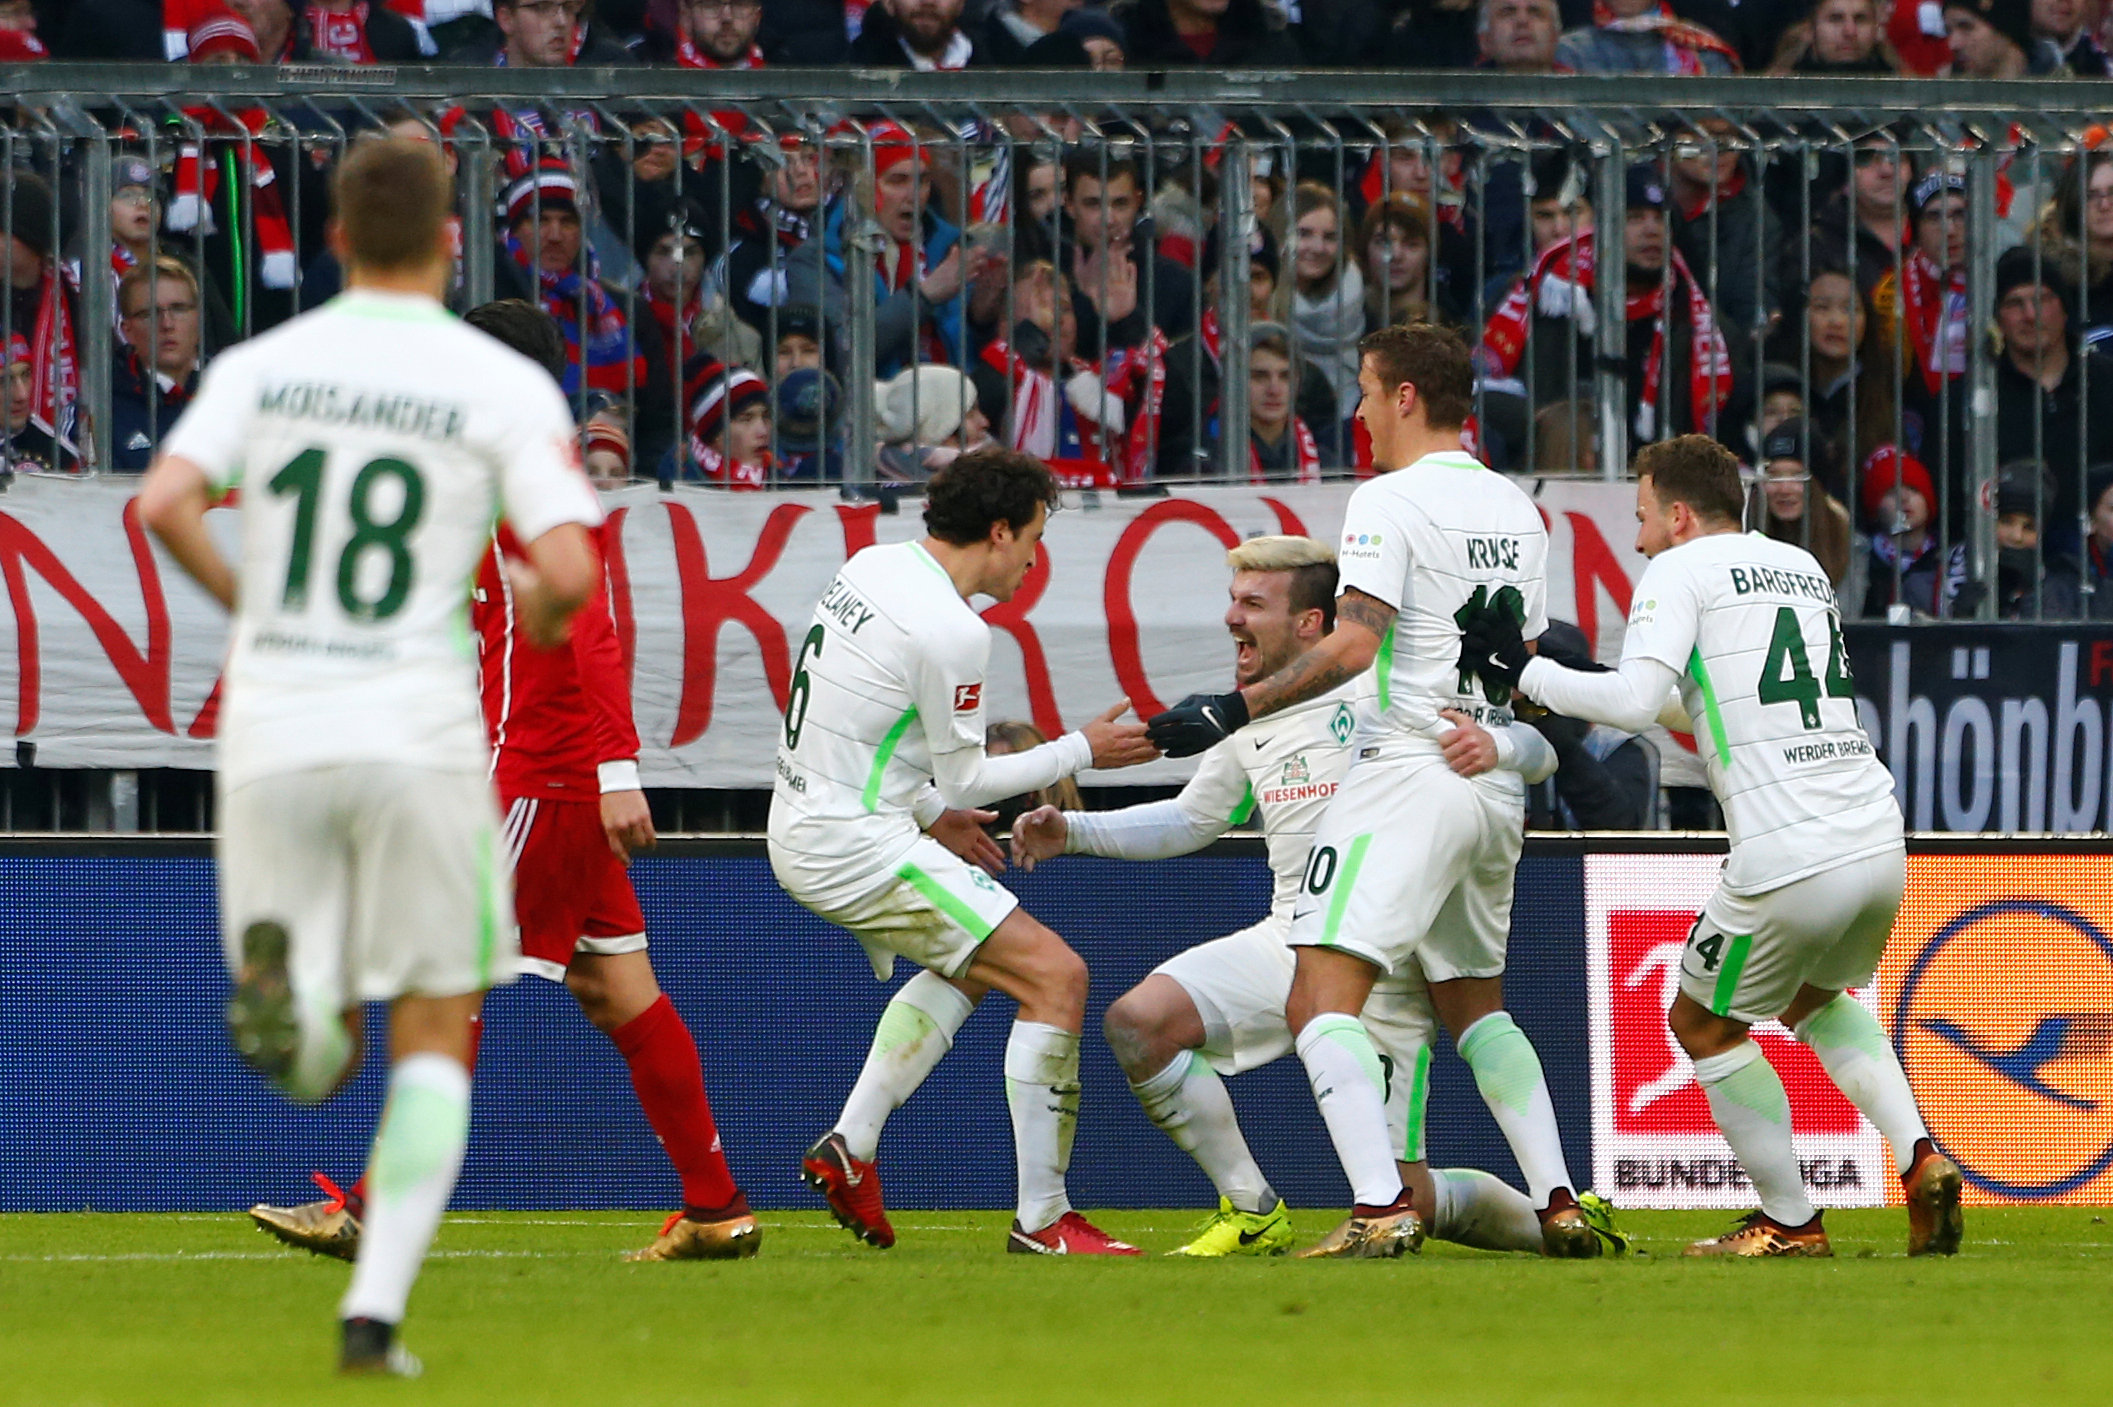 Niềm vui của các cầu thủ Werder Bremen sau khi mở tỉ số. Ảnh: REUTERS